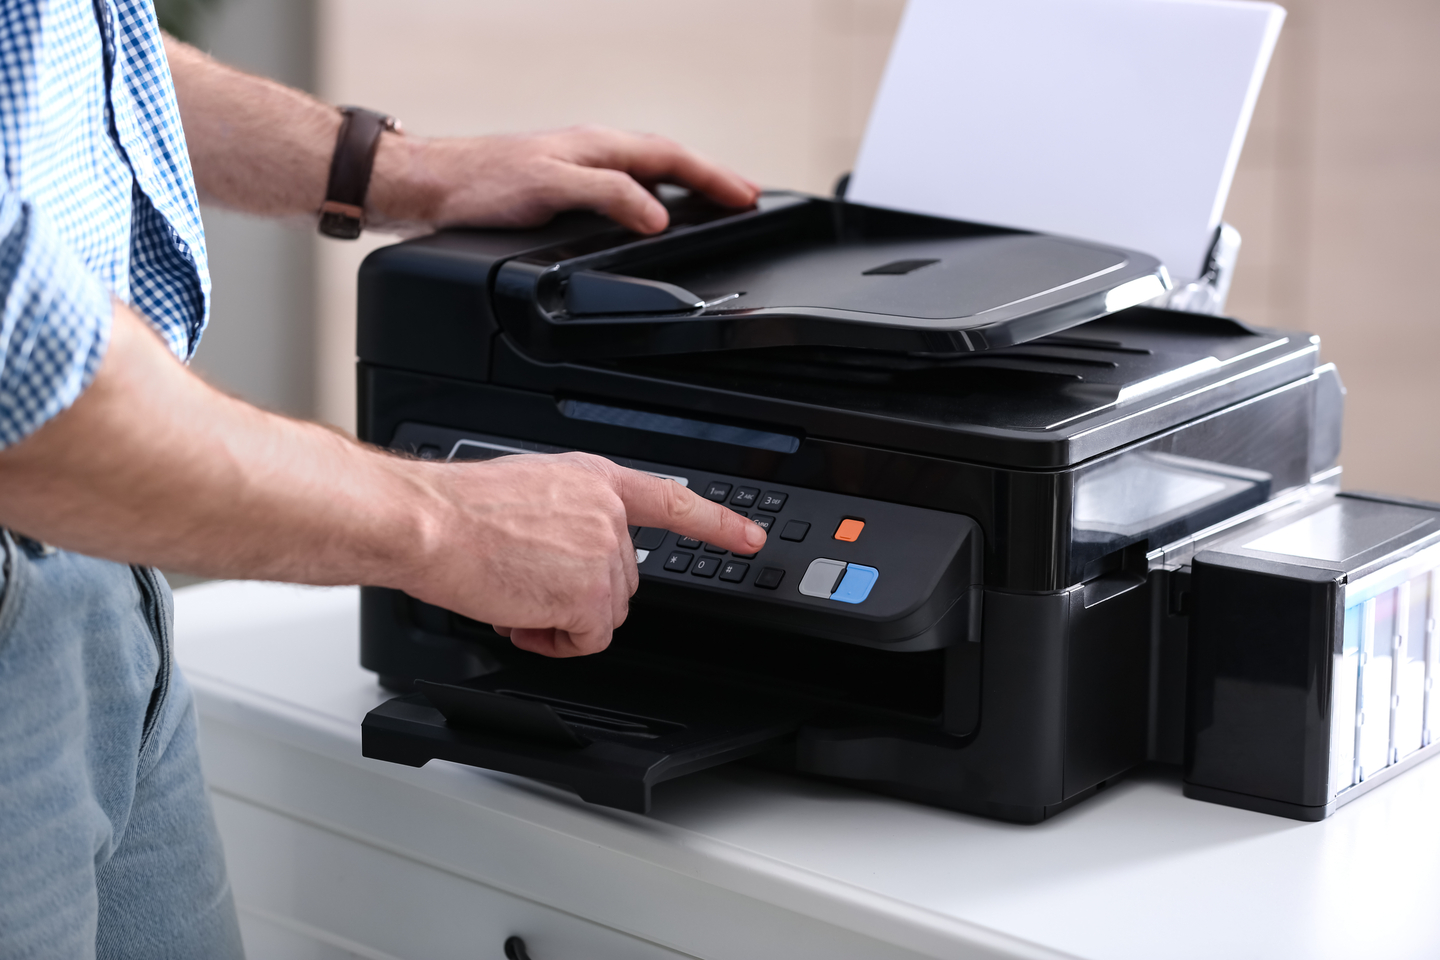 Qué es una impresora multifuncional?